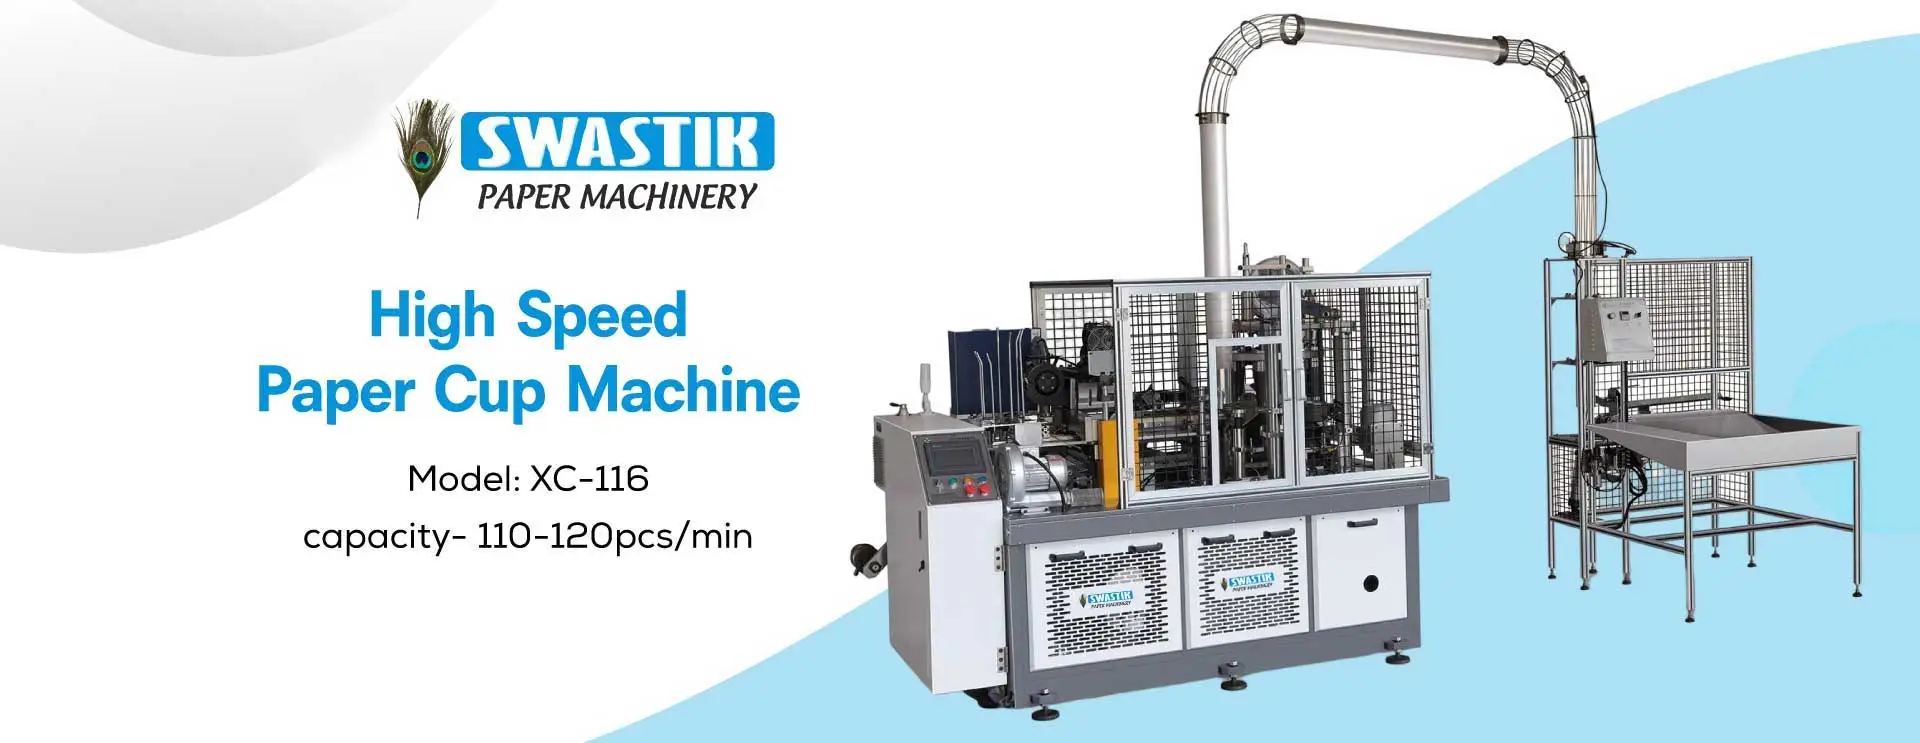 High Speed Paper Cup Machine Manufacturers in Siliguri